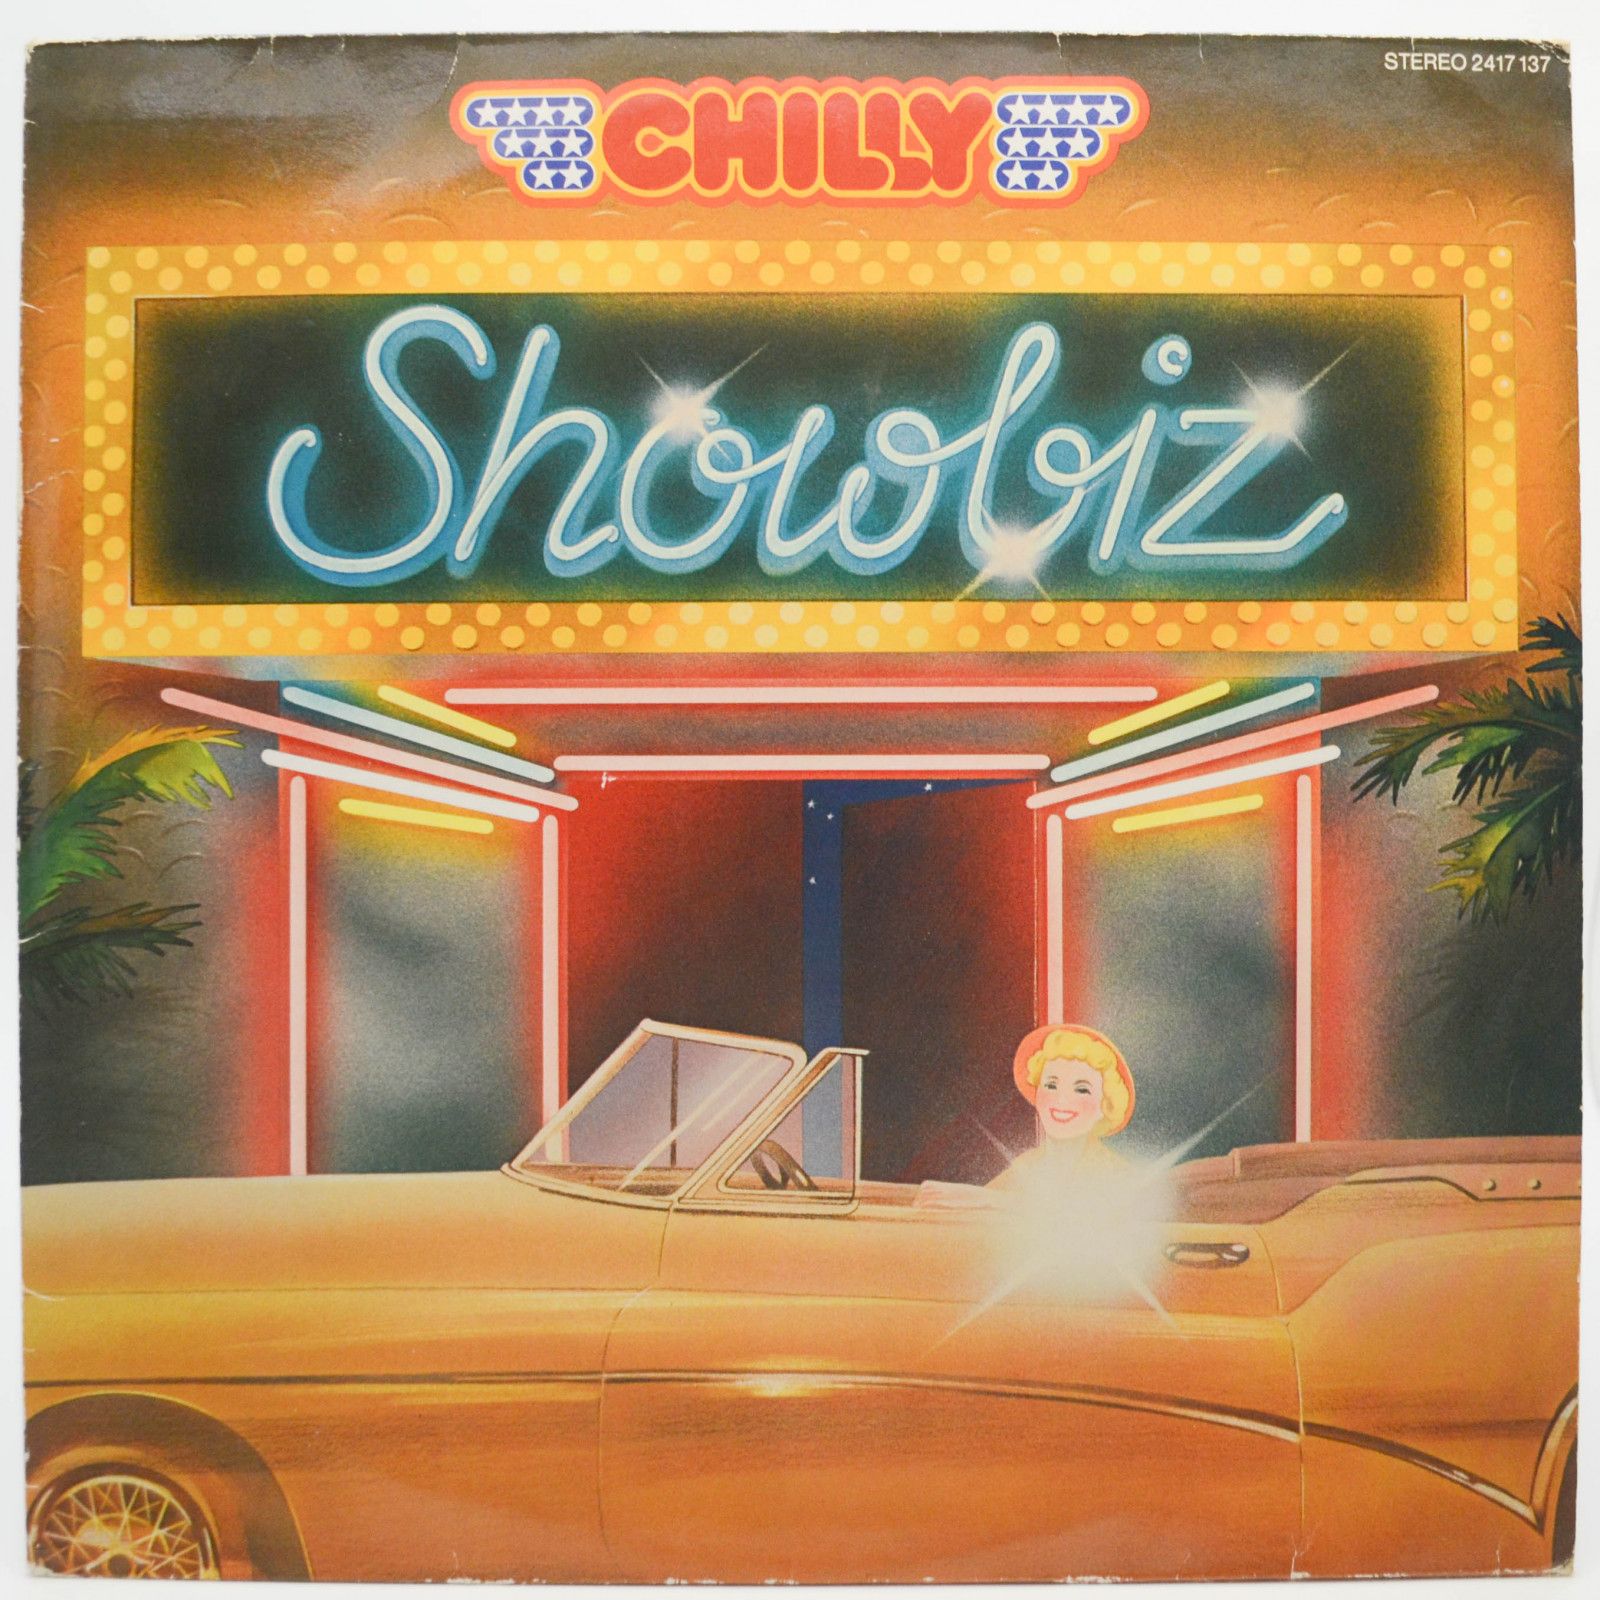 Chilly — Showbiz, 1980